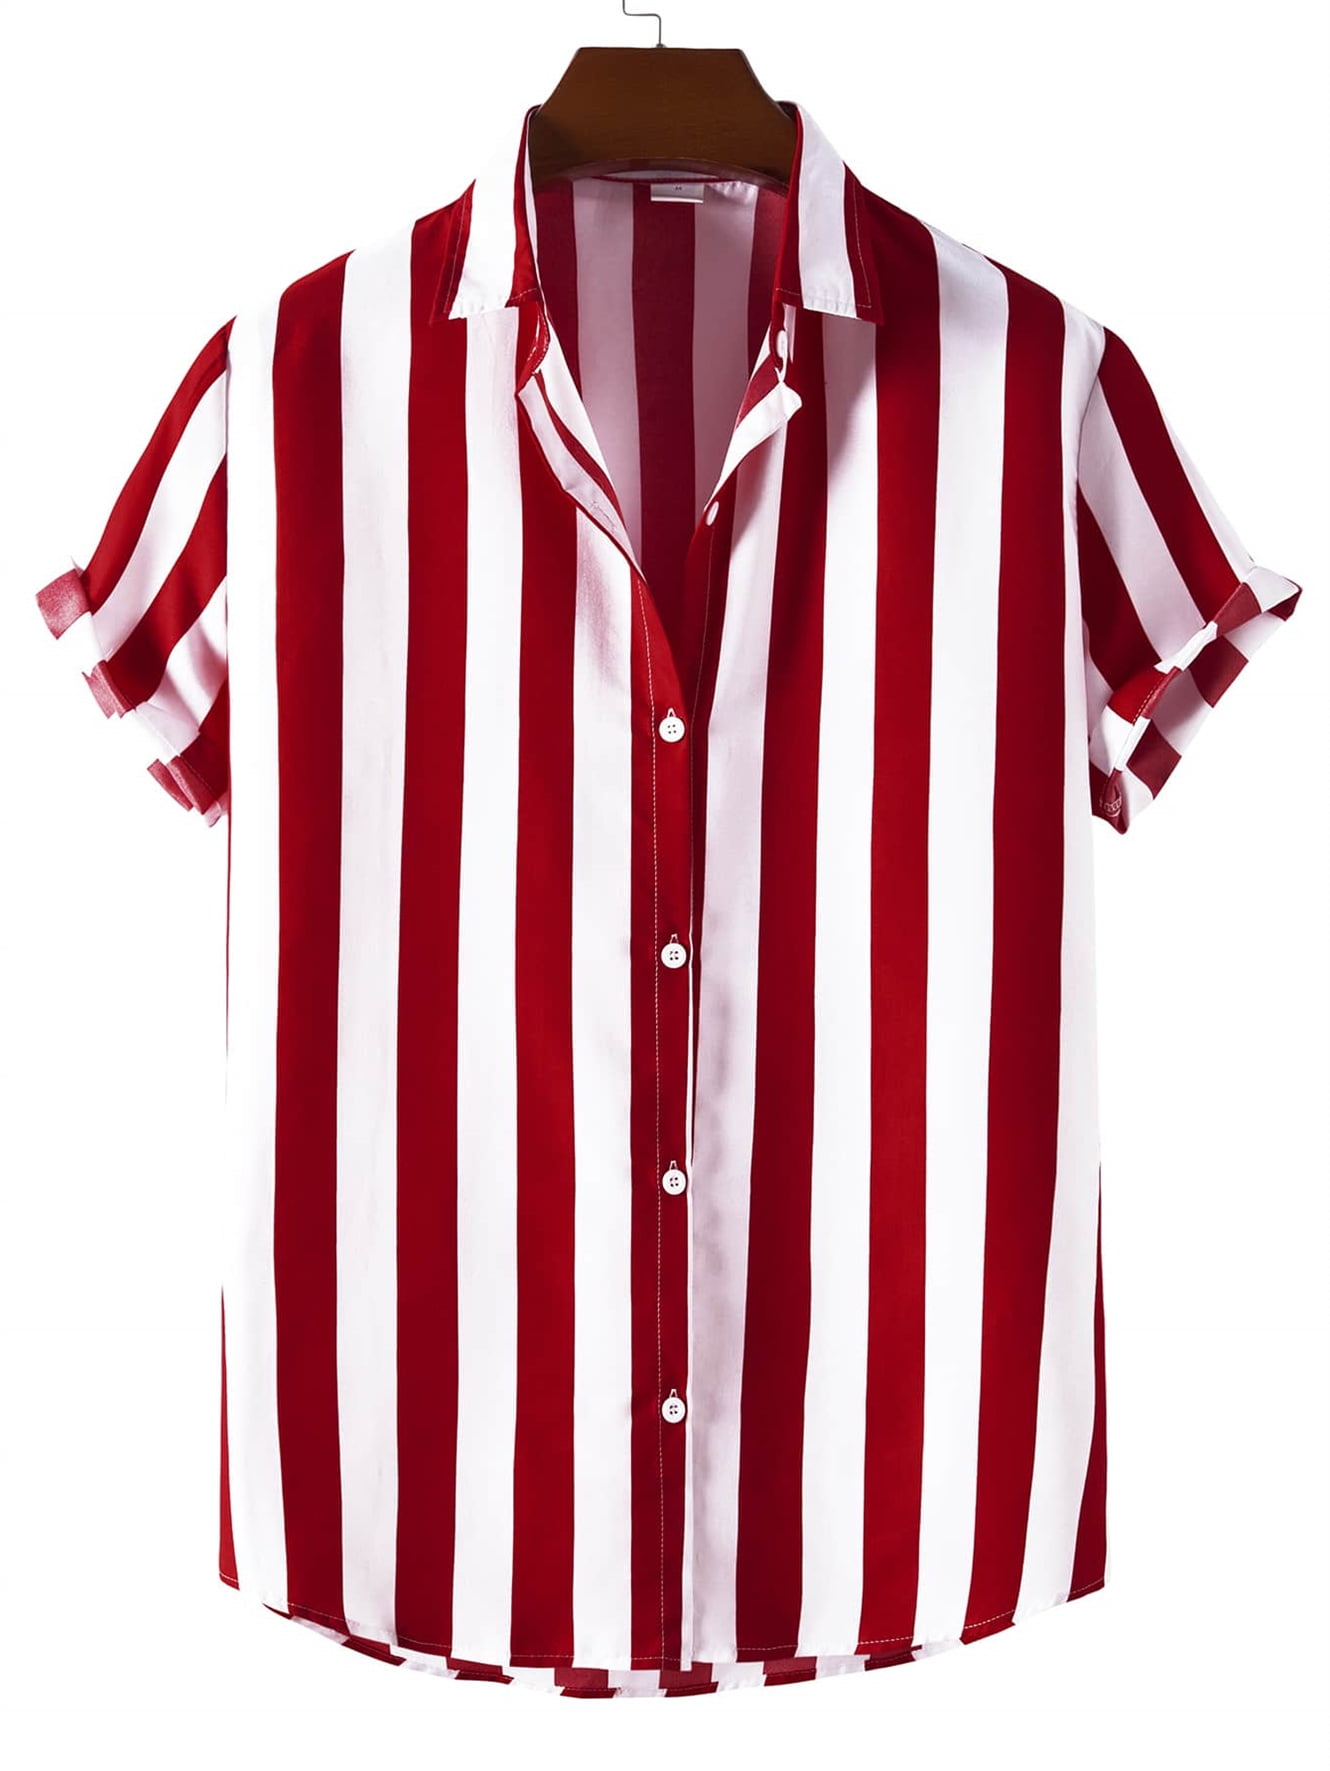 Men Vertical Striped Button Up Shirt XL(12) Red White - Walmart.com